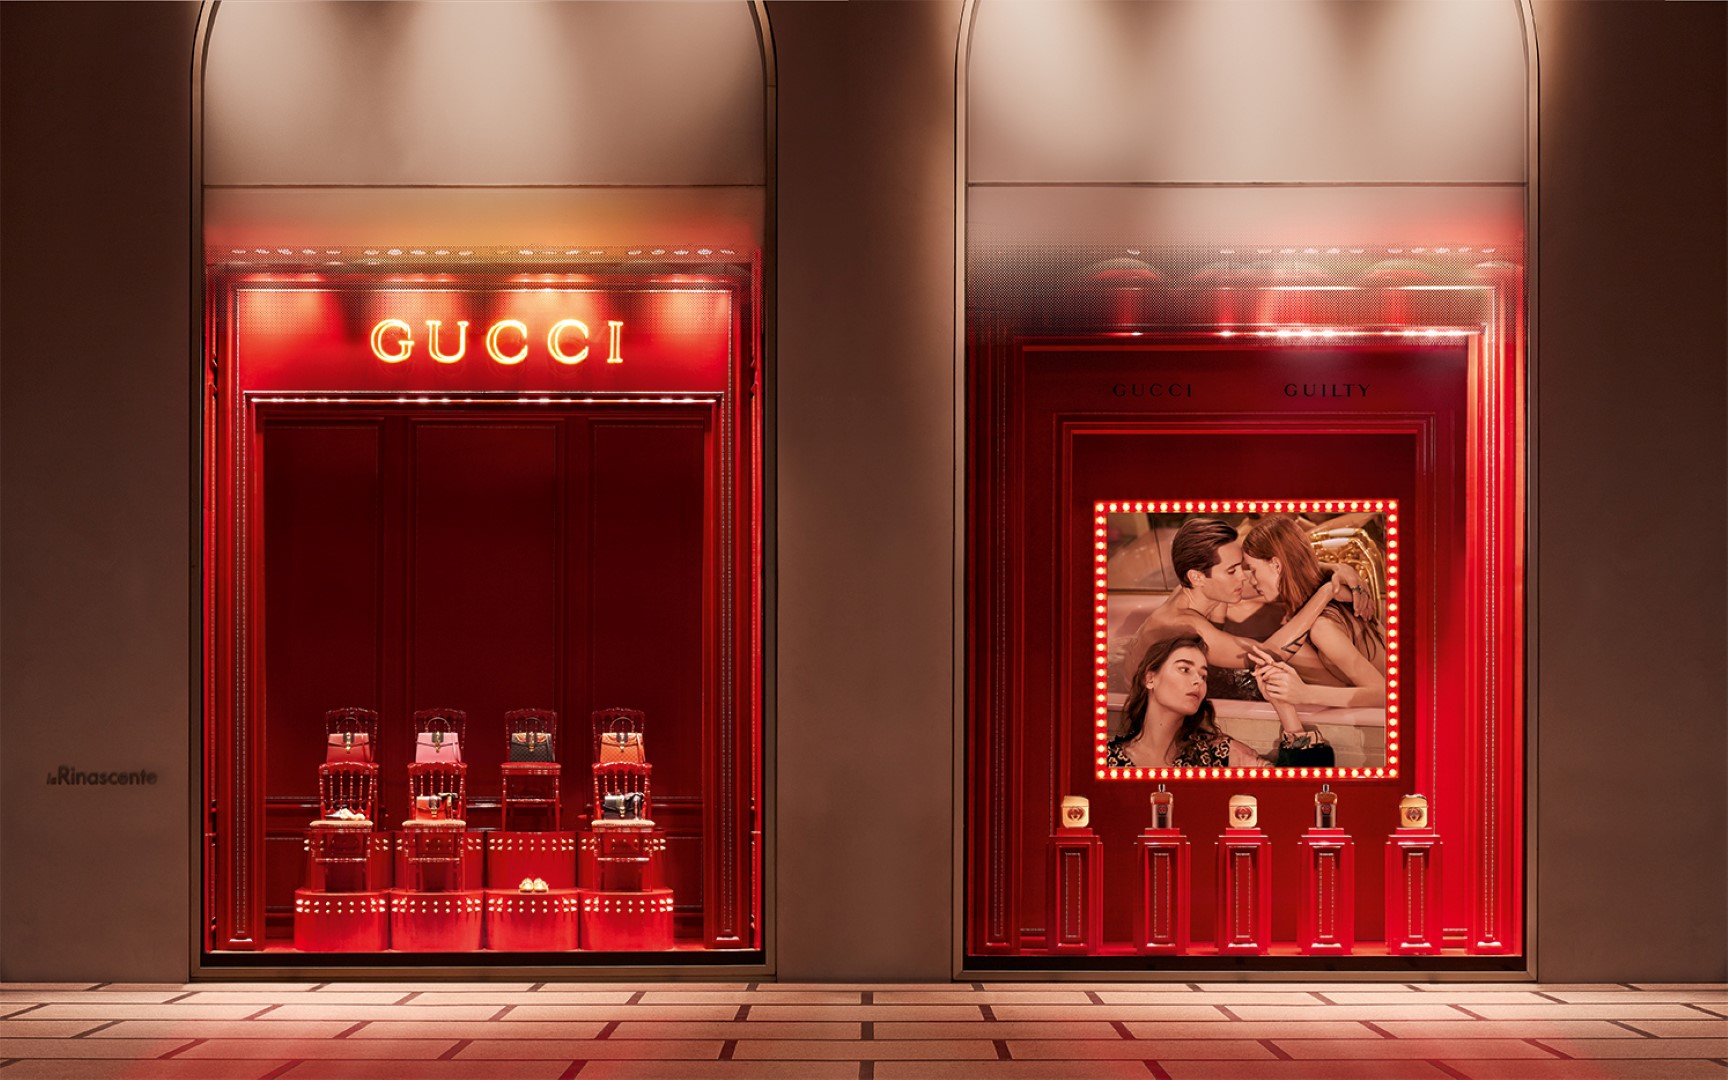 Gucci La Rinascente Milano: le vetrine personalizzate con la campagna Gucci Guilty